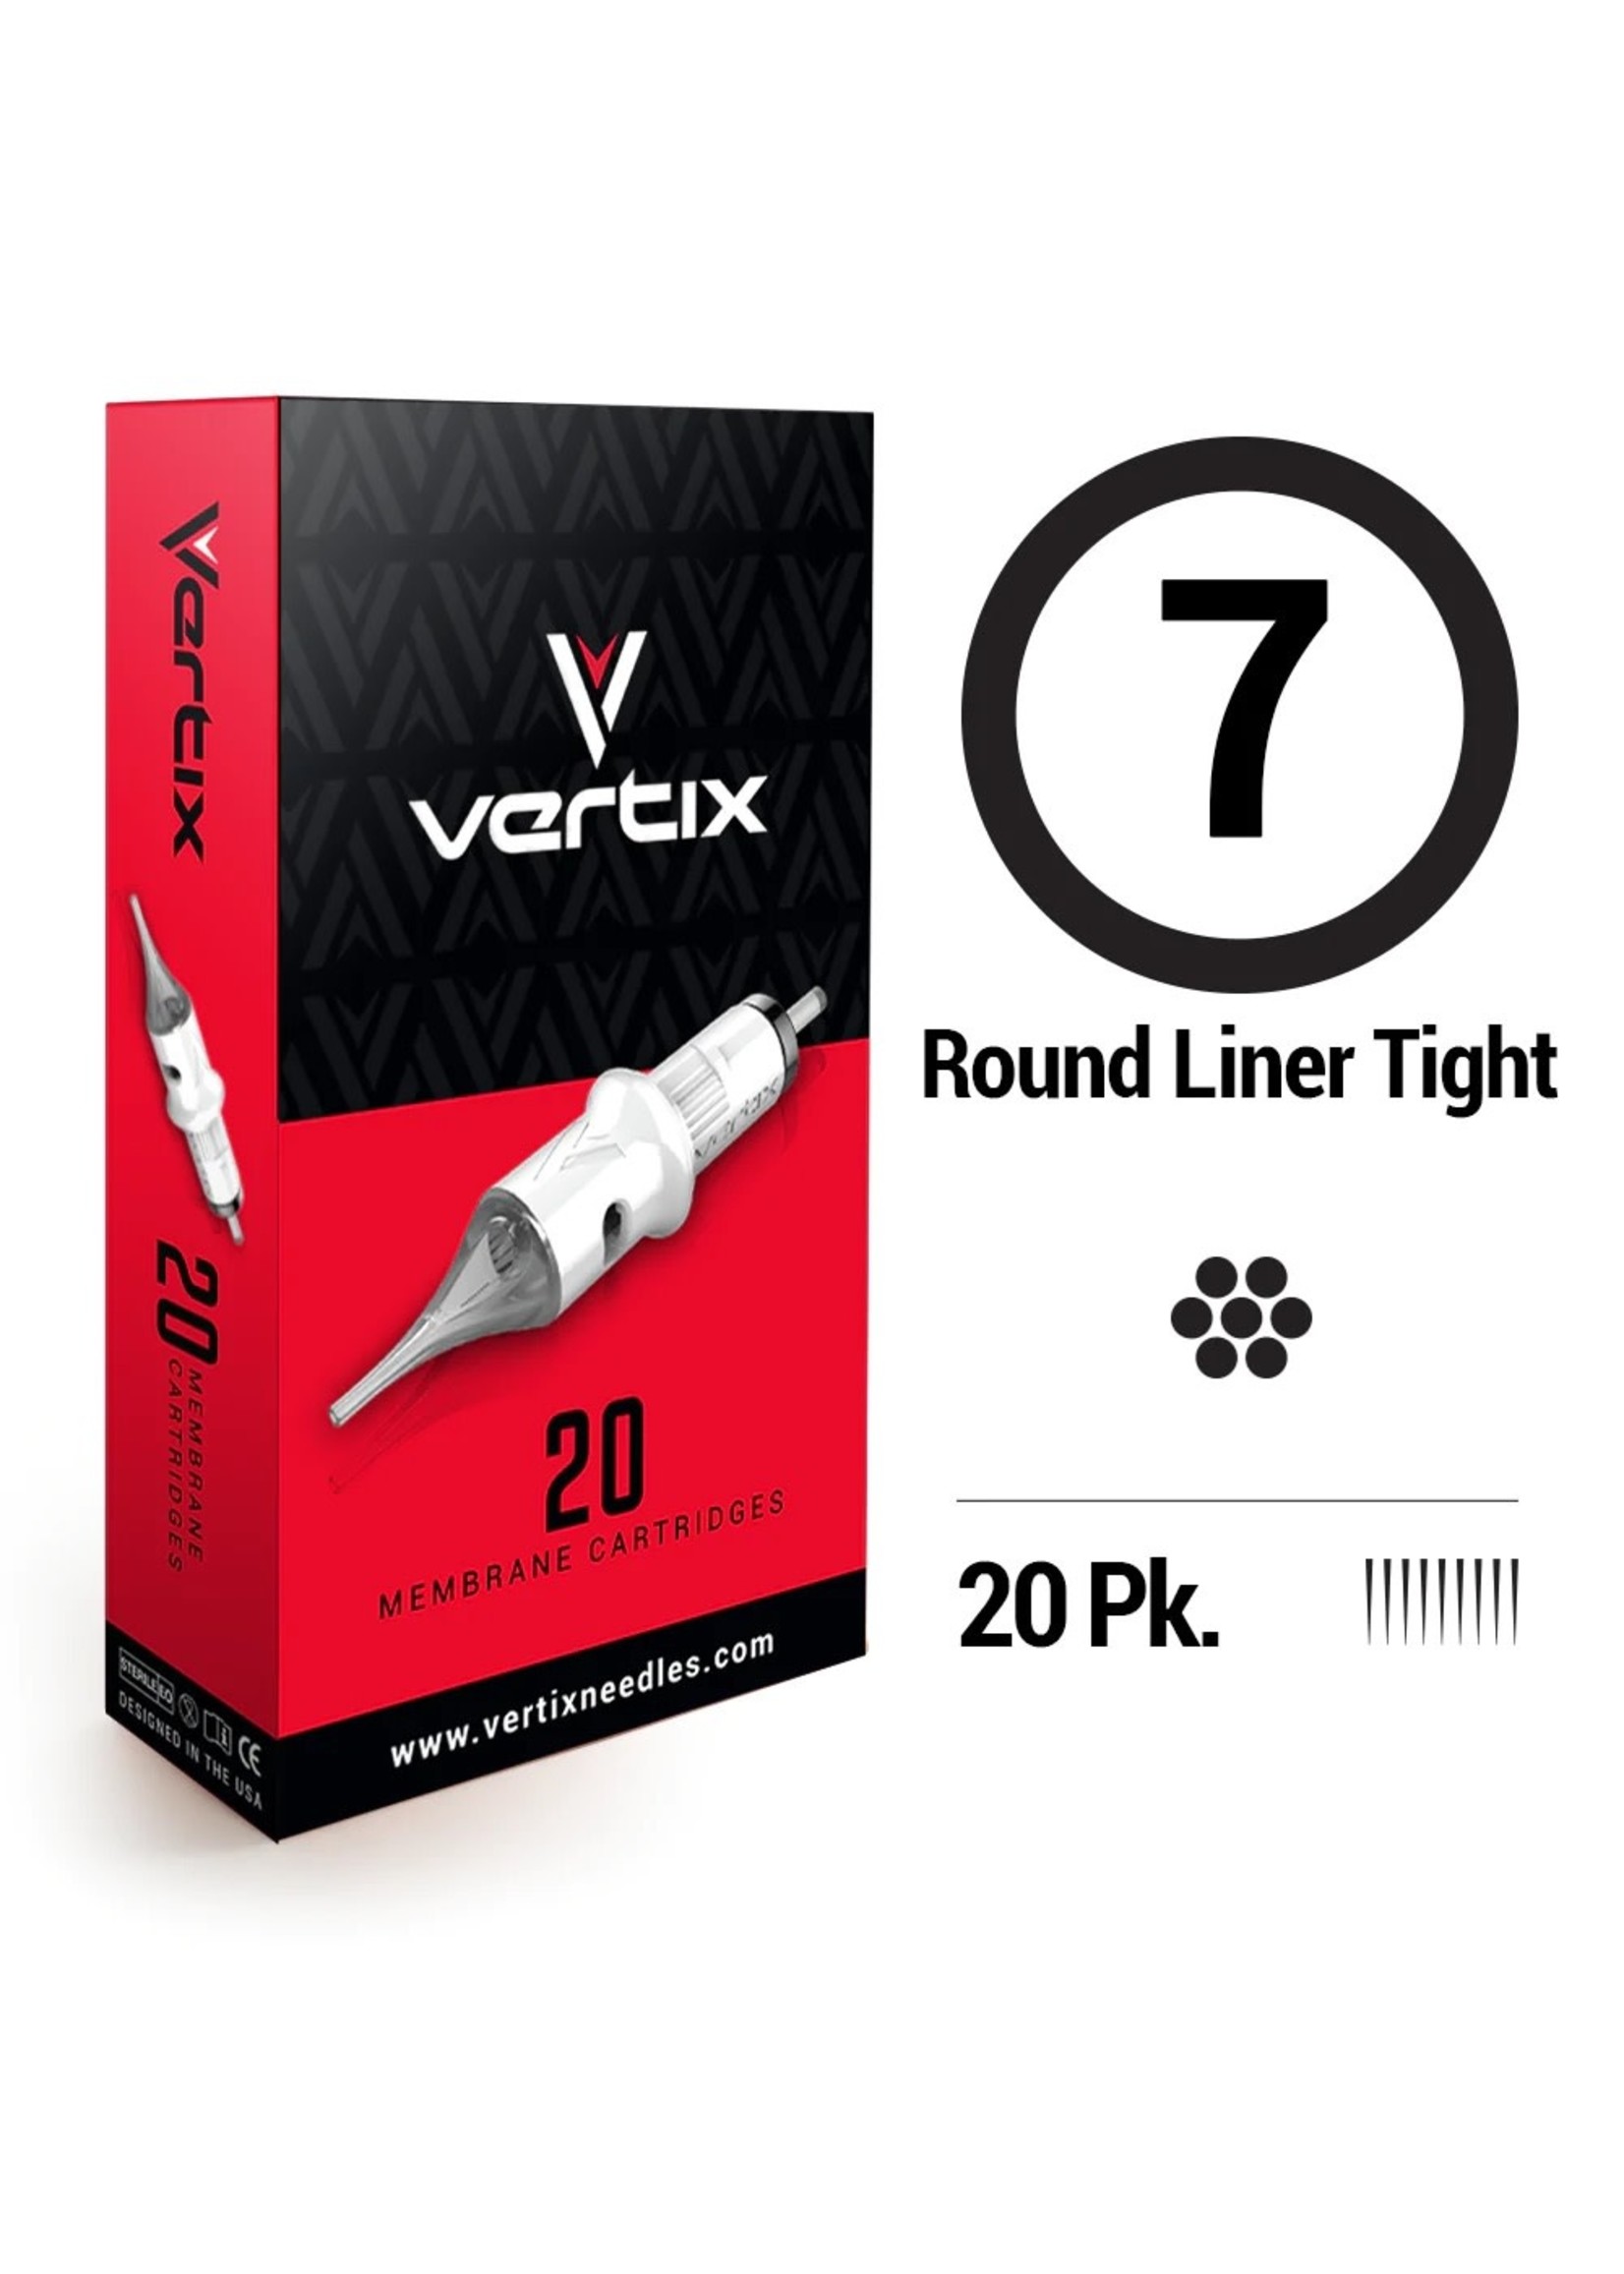 Darklab Vertix 7 Round liner Tight Box of 20